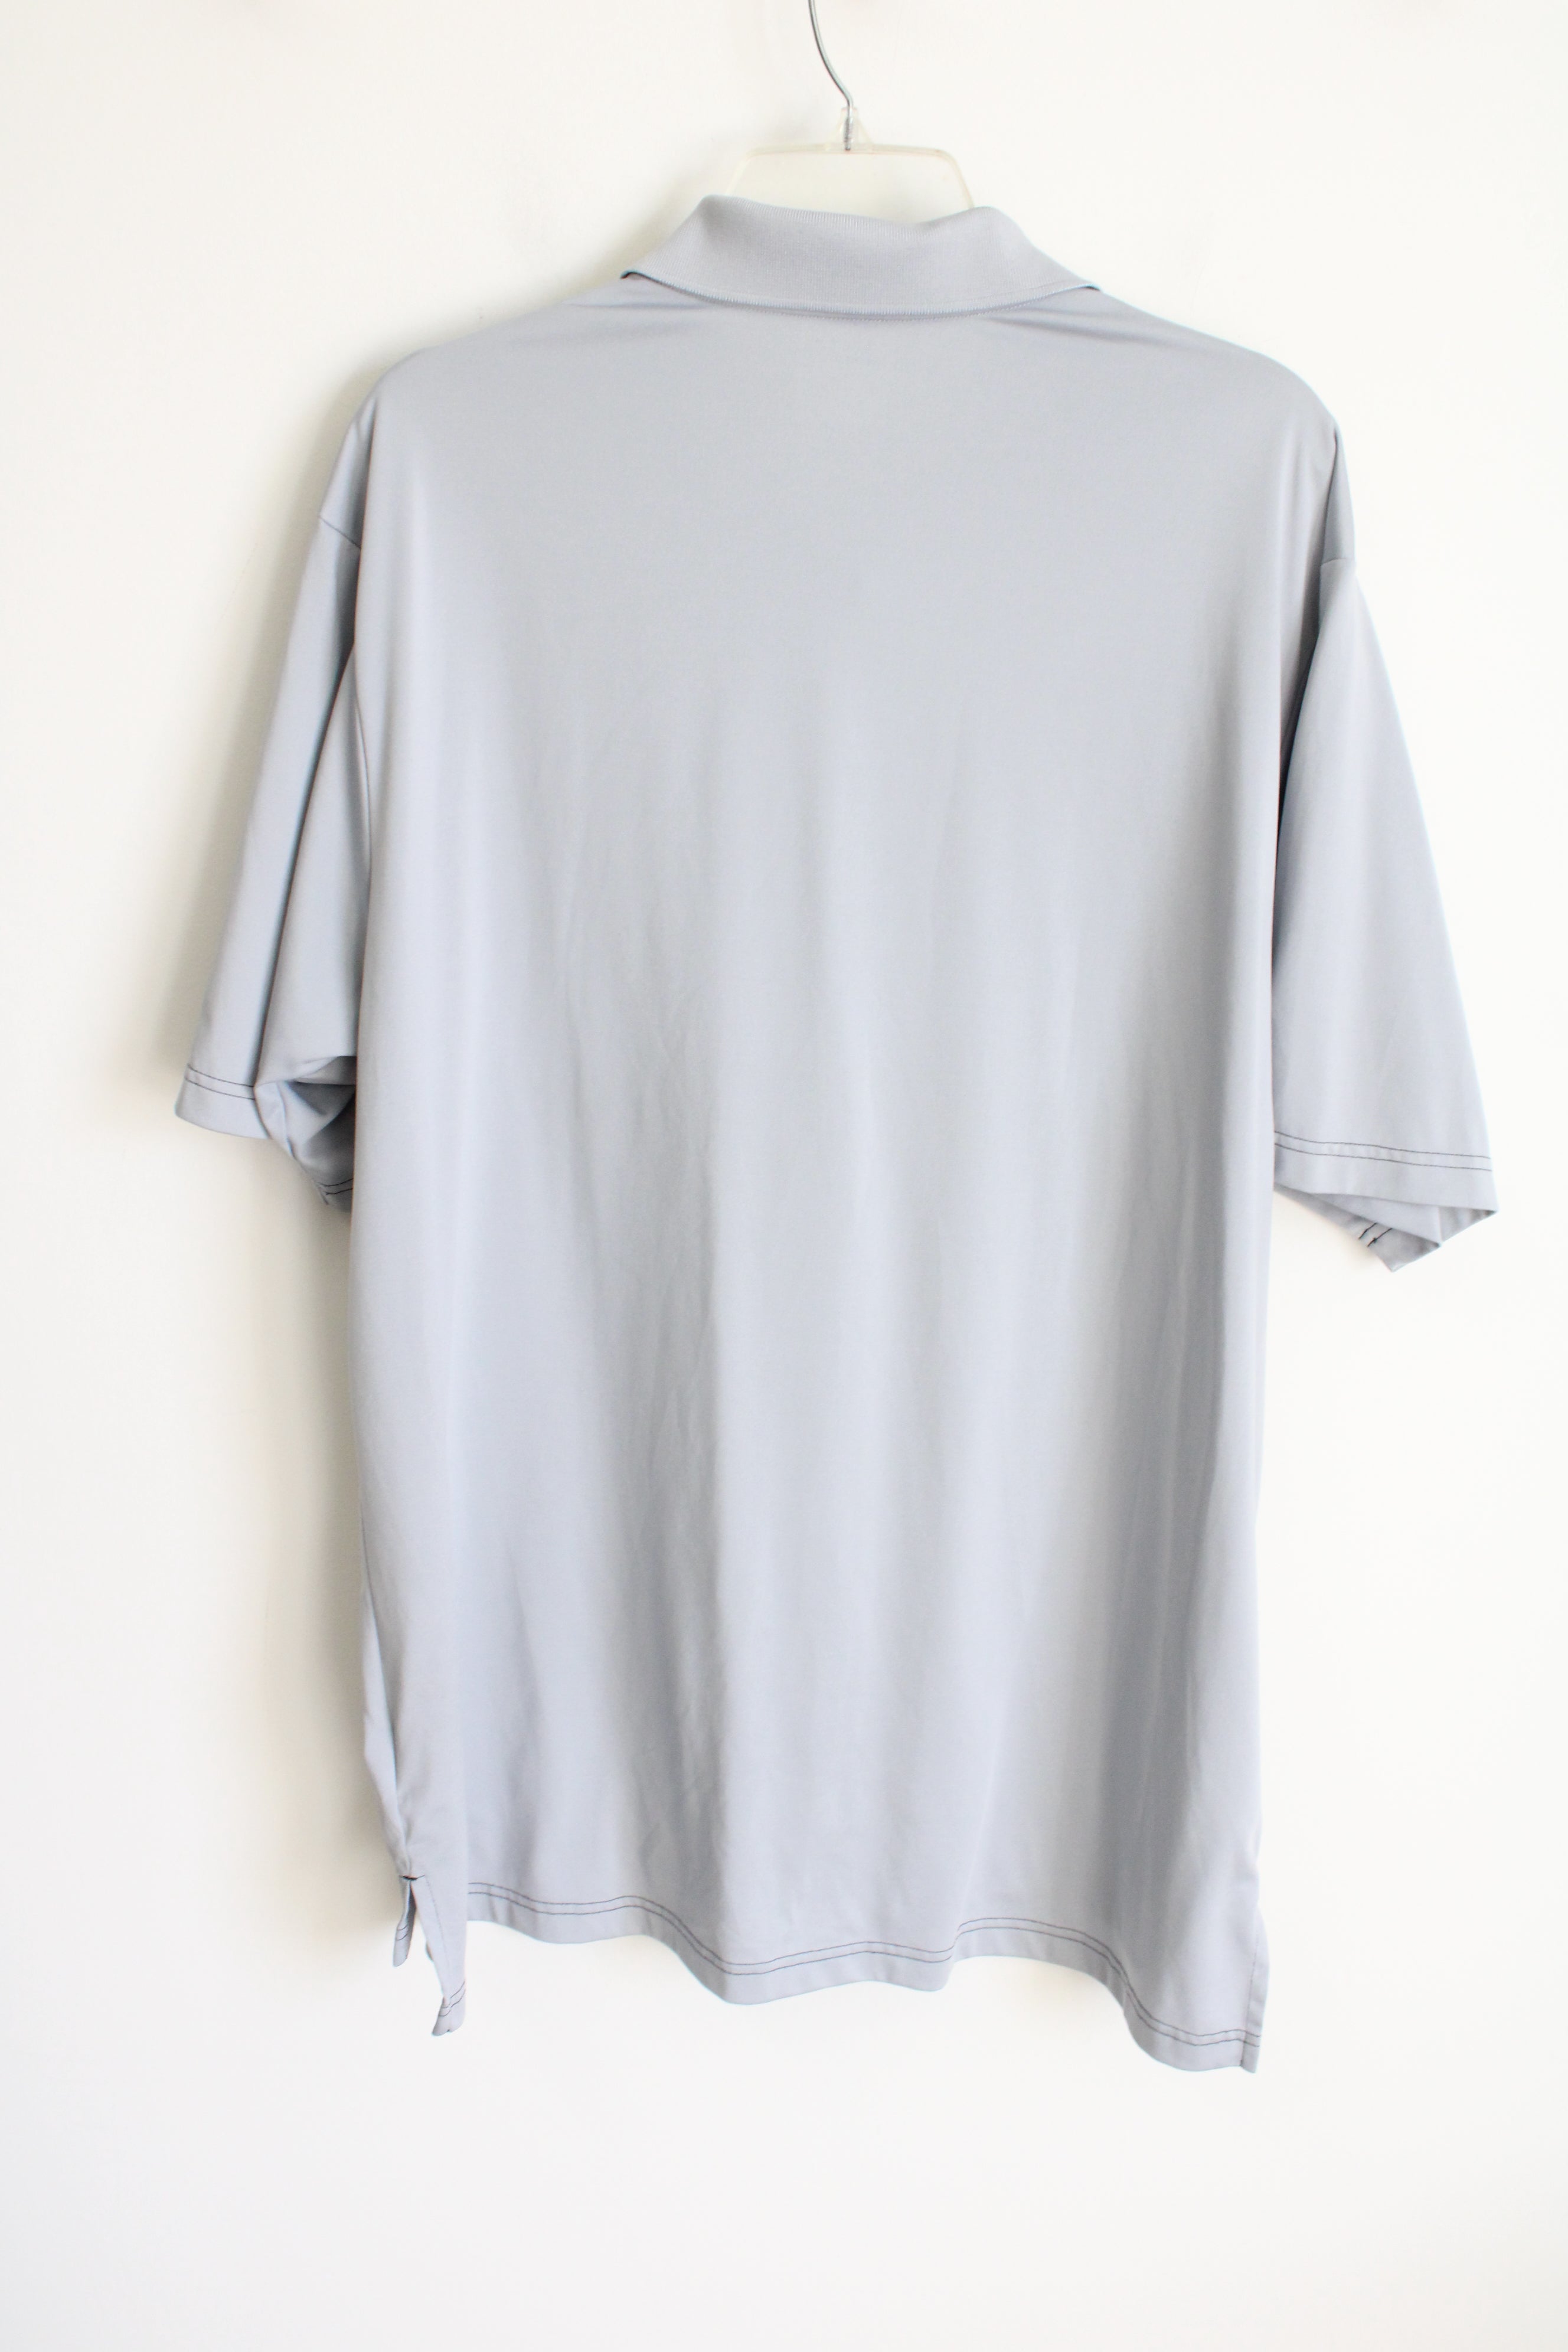 Adidas Golf Gray Polo Shirt | XL